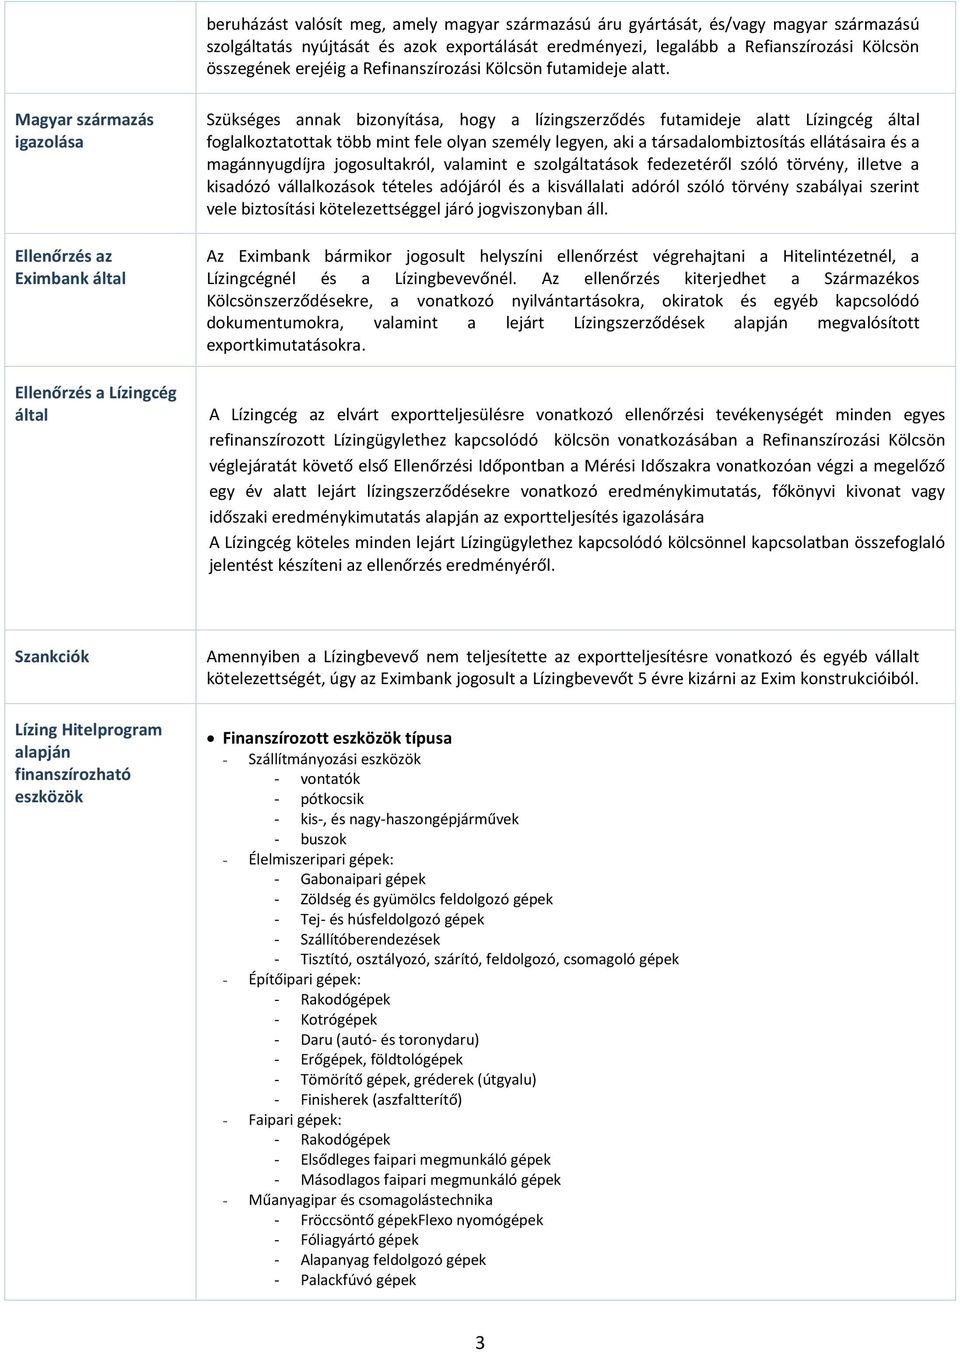 Magyar származás igazolása Ellenőrzés az Eximbank által Ellenőrzés a Lízingcég által Szükséges annak bizonyítása, hogy a lízingszerződés futamideje alatt Lízingcég által foglalkoztatottak több mint